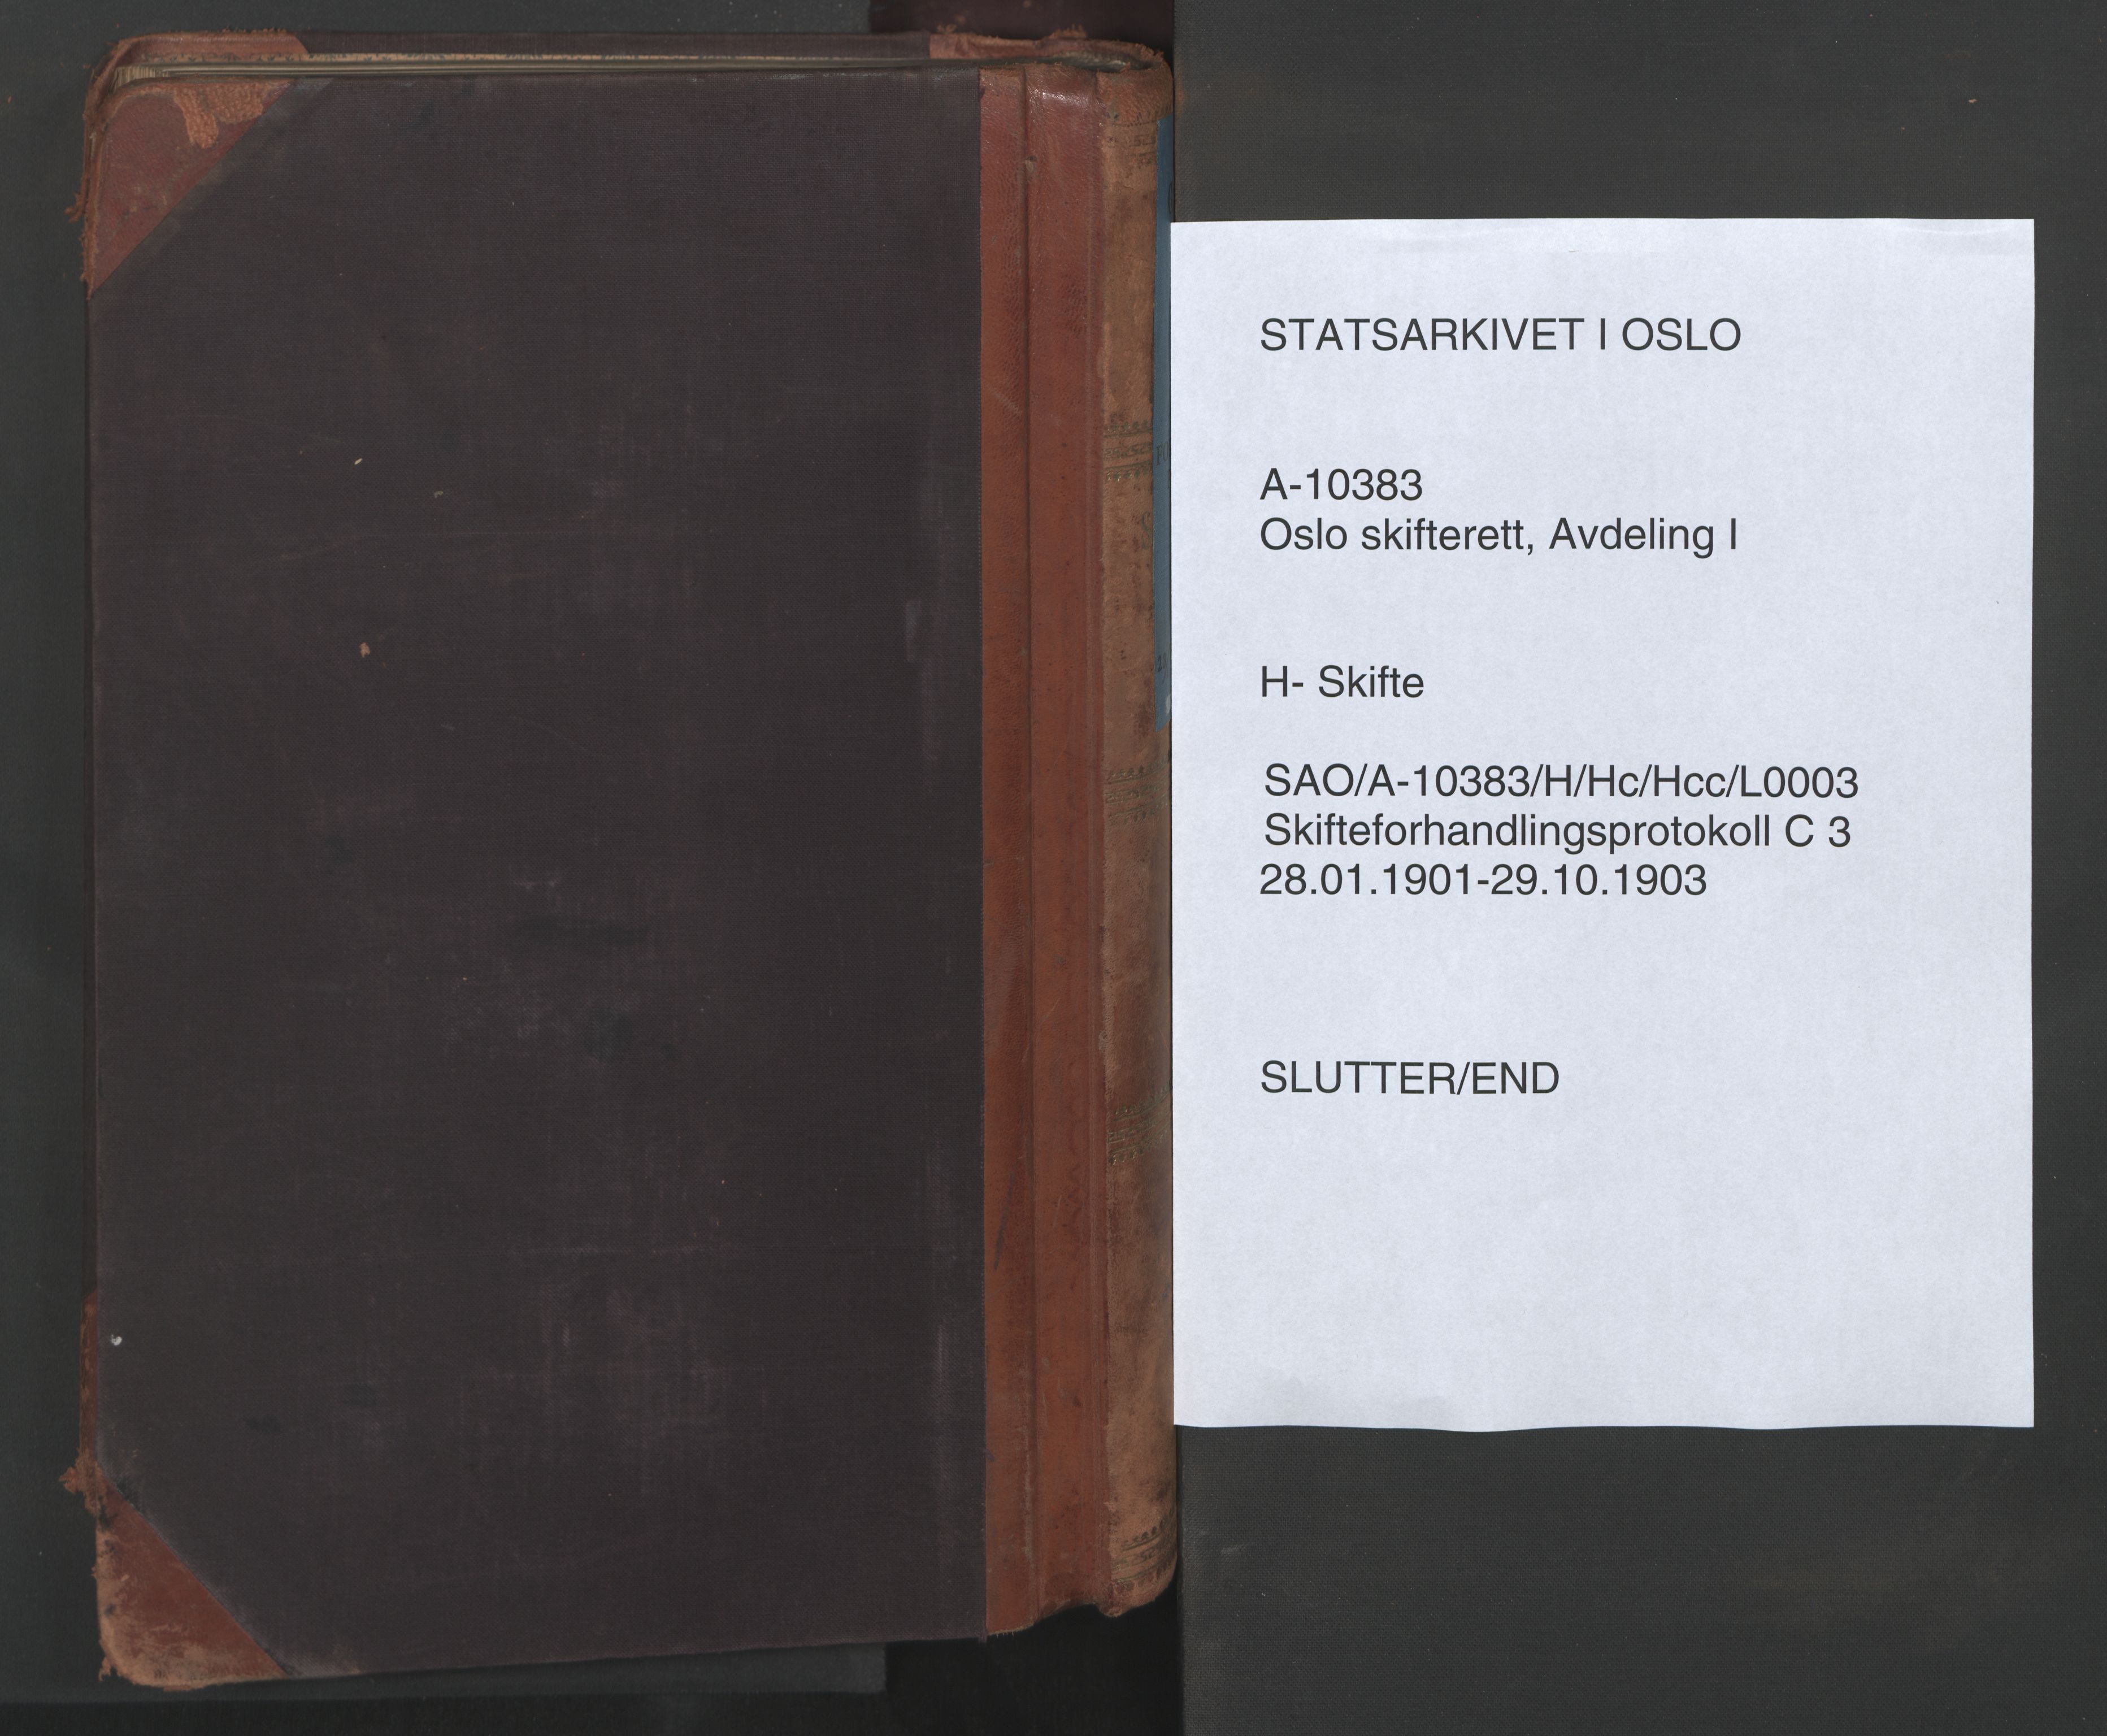 Oslo skifterett, SAO/A-10383/H/Hc/Hcc/L0003: Skifteforhandlingsprotokoll, 1901-1903